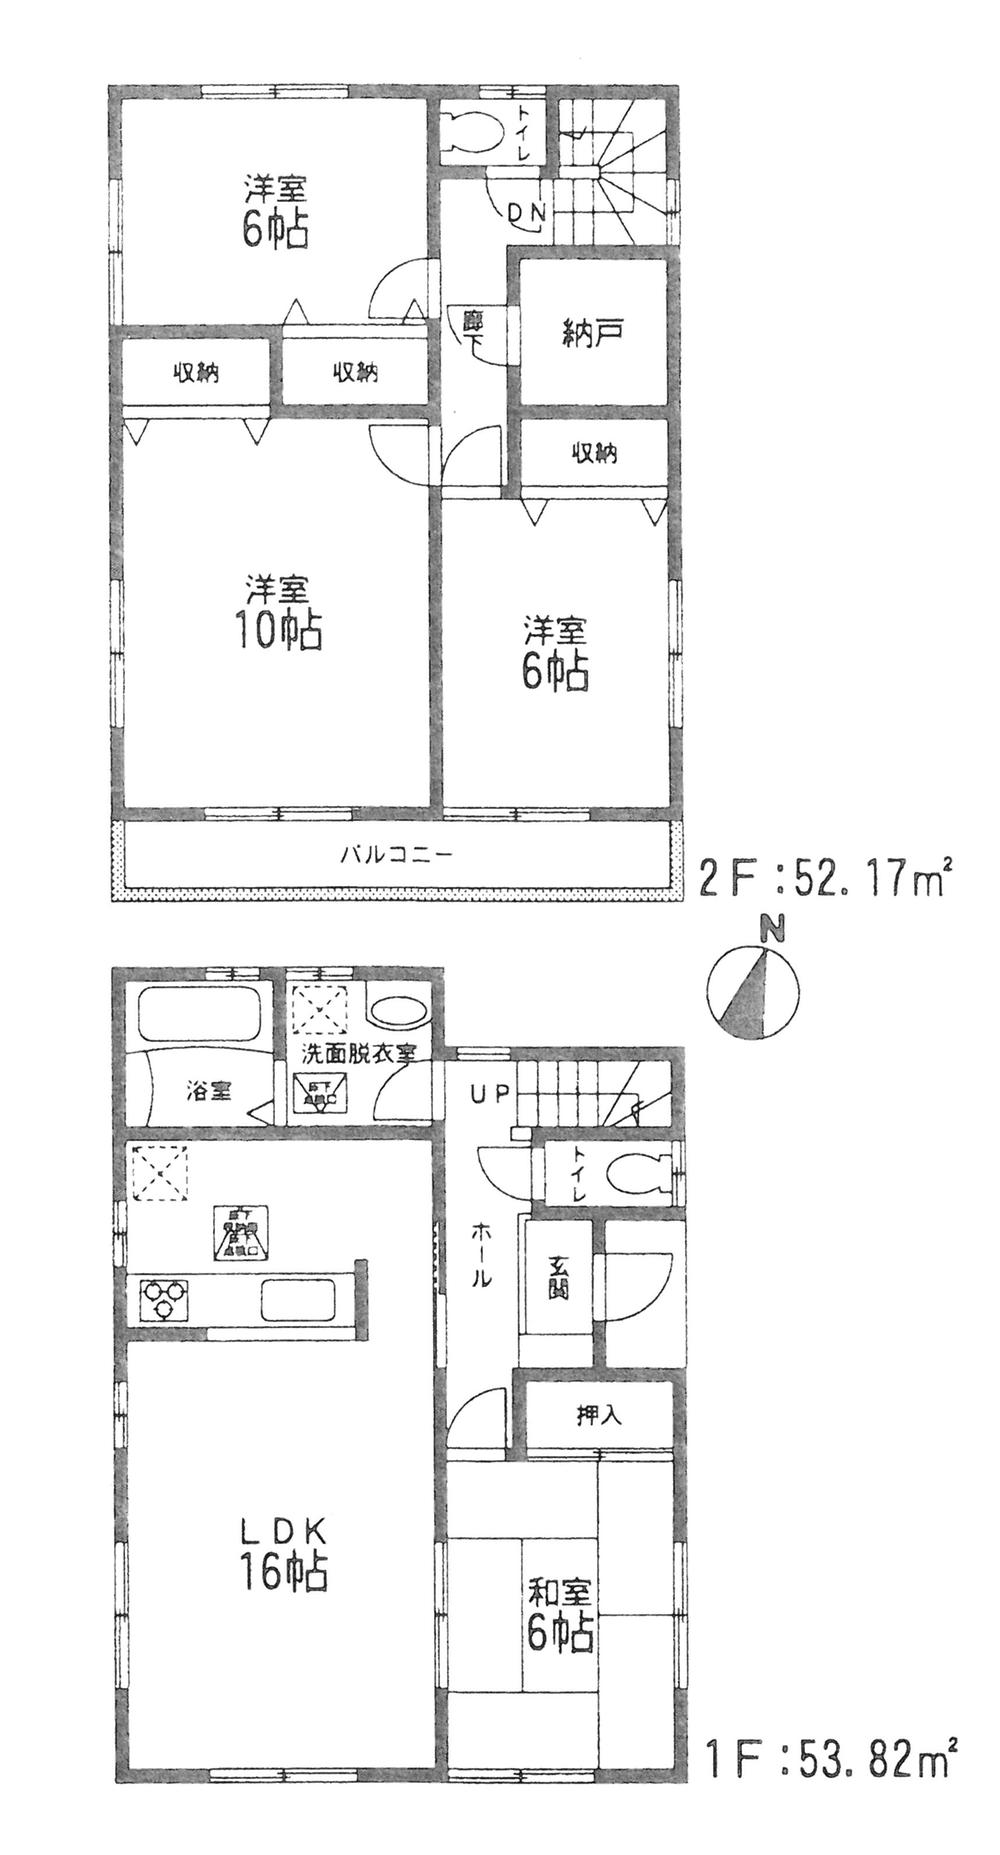 Floor plan. 28,980,000 yen, 4LDK + S (storeroom), Land area 178.72 sq m , Building area 105.99 sq m floor plan